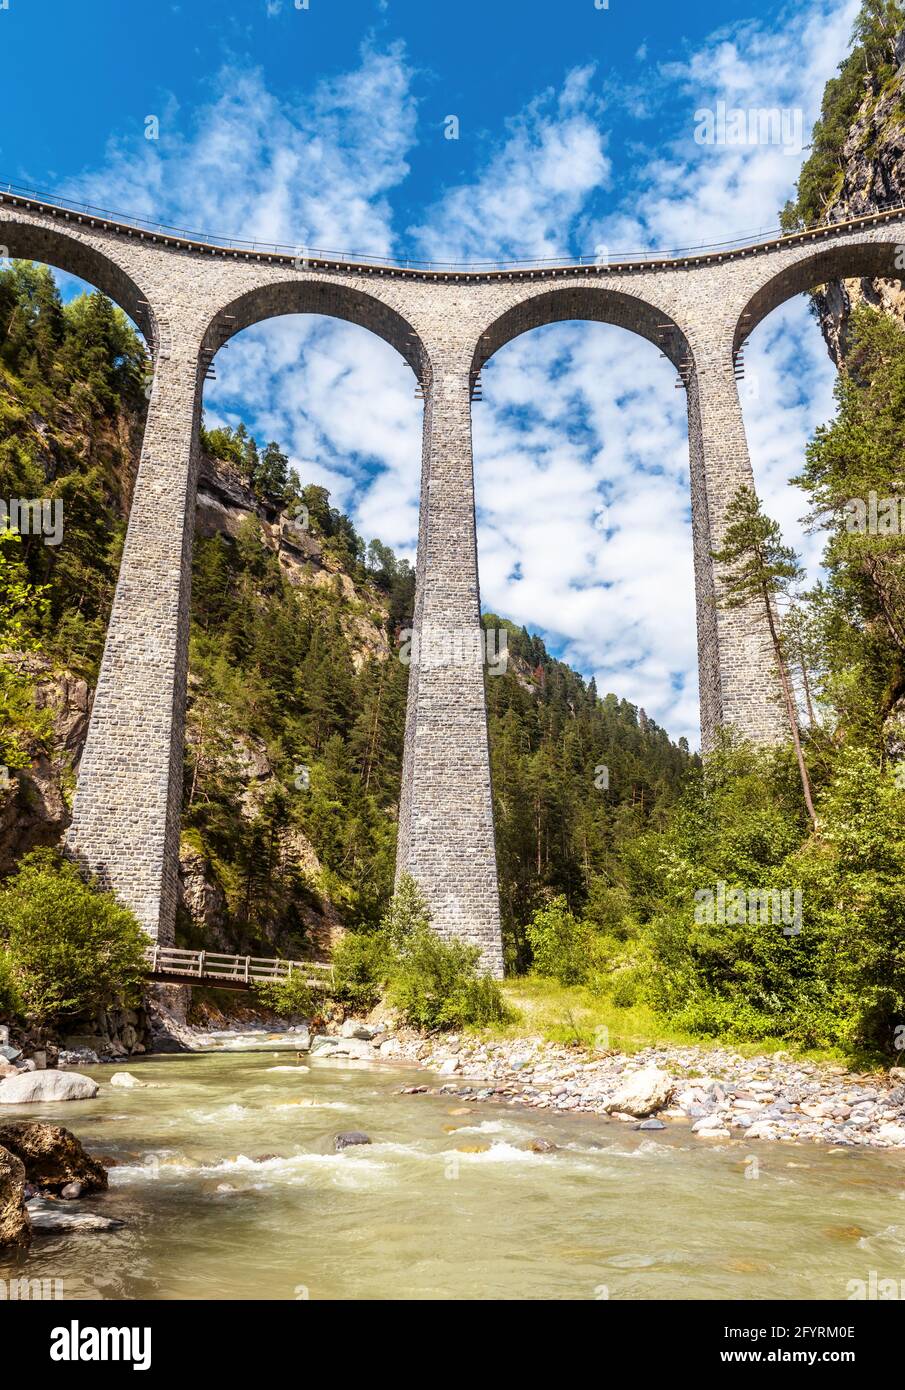 Landwasserviadukt in den Schweizer Alpen, vertikale Ansicht der Eisenbahnbrücke in der Schweiz. Dieser Ort ist ein berühmtes Wahrzeichen. Berglandschaft mit erstaunlicher Eisenbahn Stockfoto